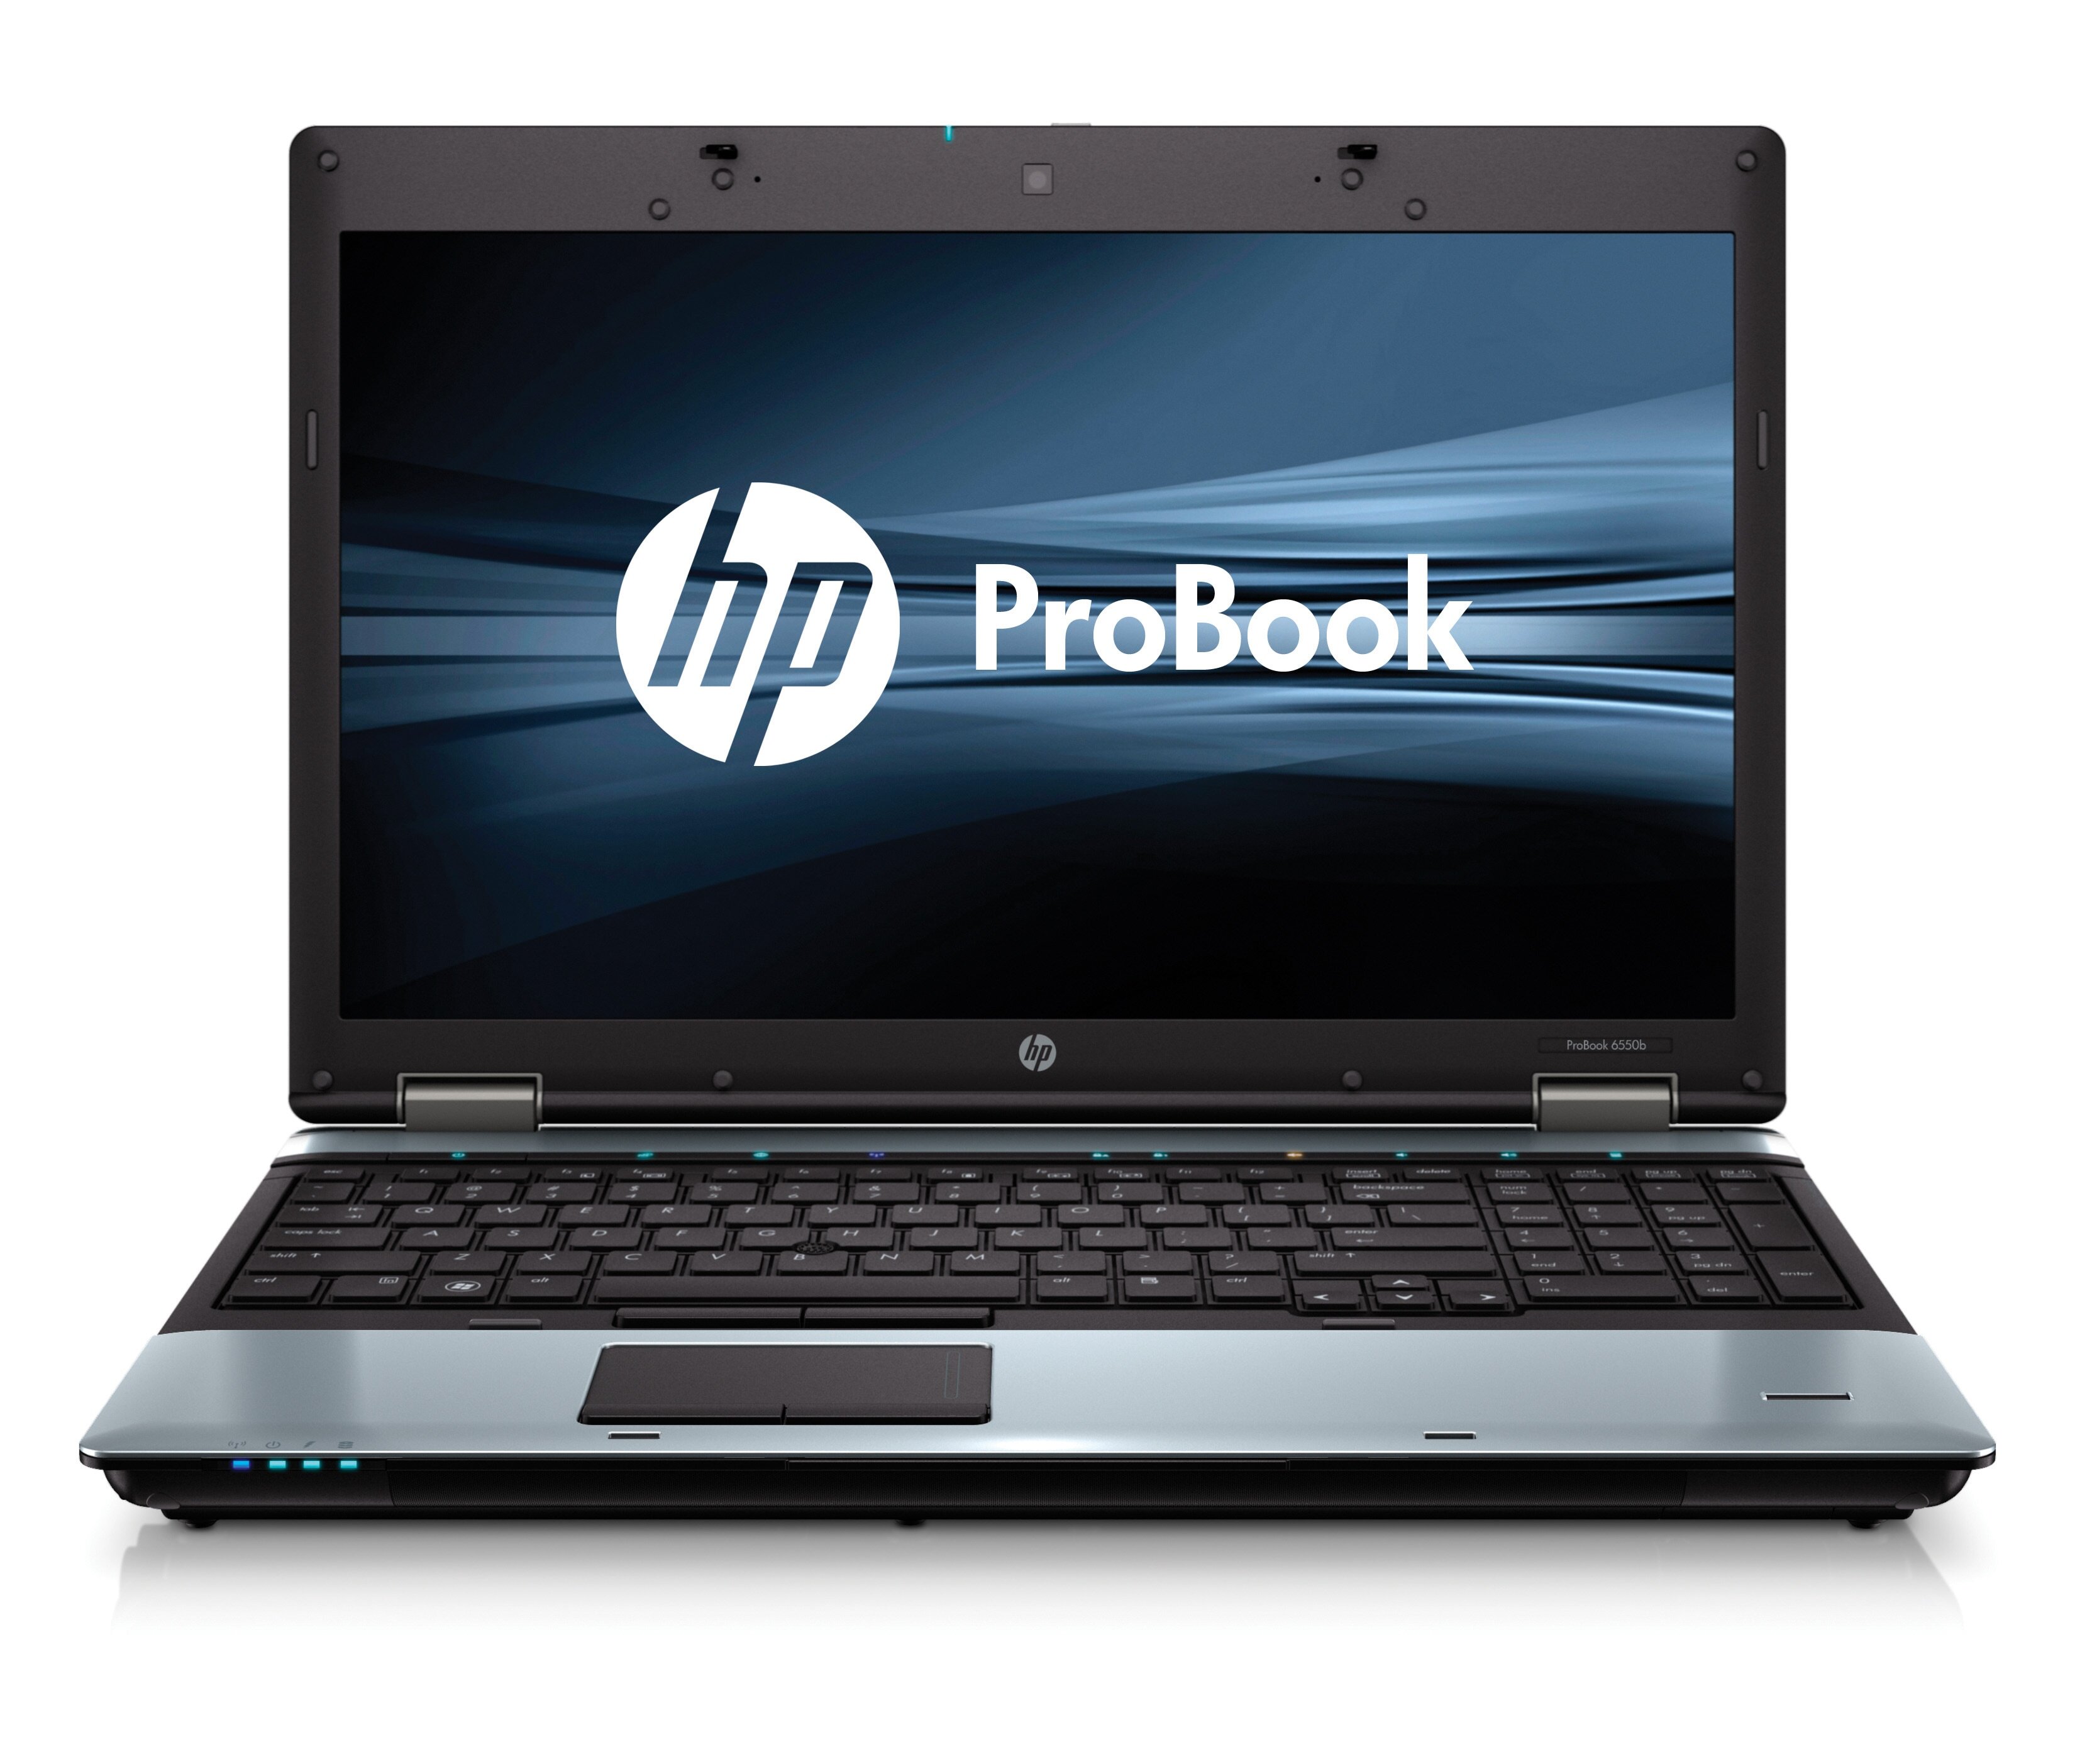 HP 6000 ProBook 6550b